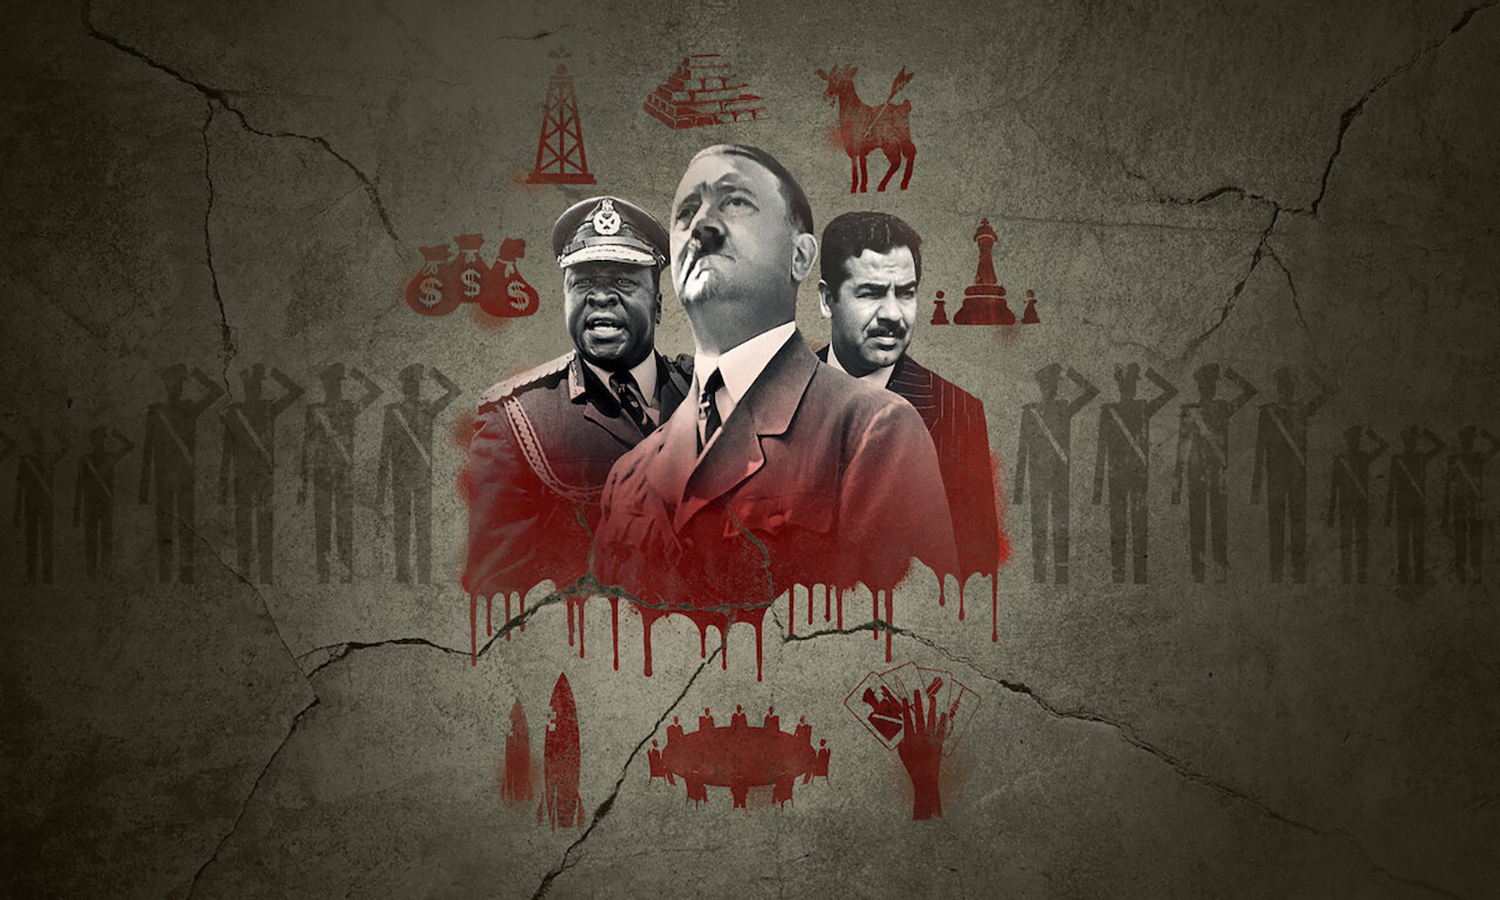 البوستر الرسمي لمسلسل كيف تصبح طاغية يظهر فيه أدولف هتلر، عيدي أمين، وصدام حسين (نتفلكس)